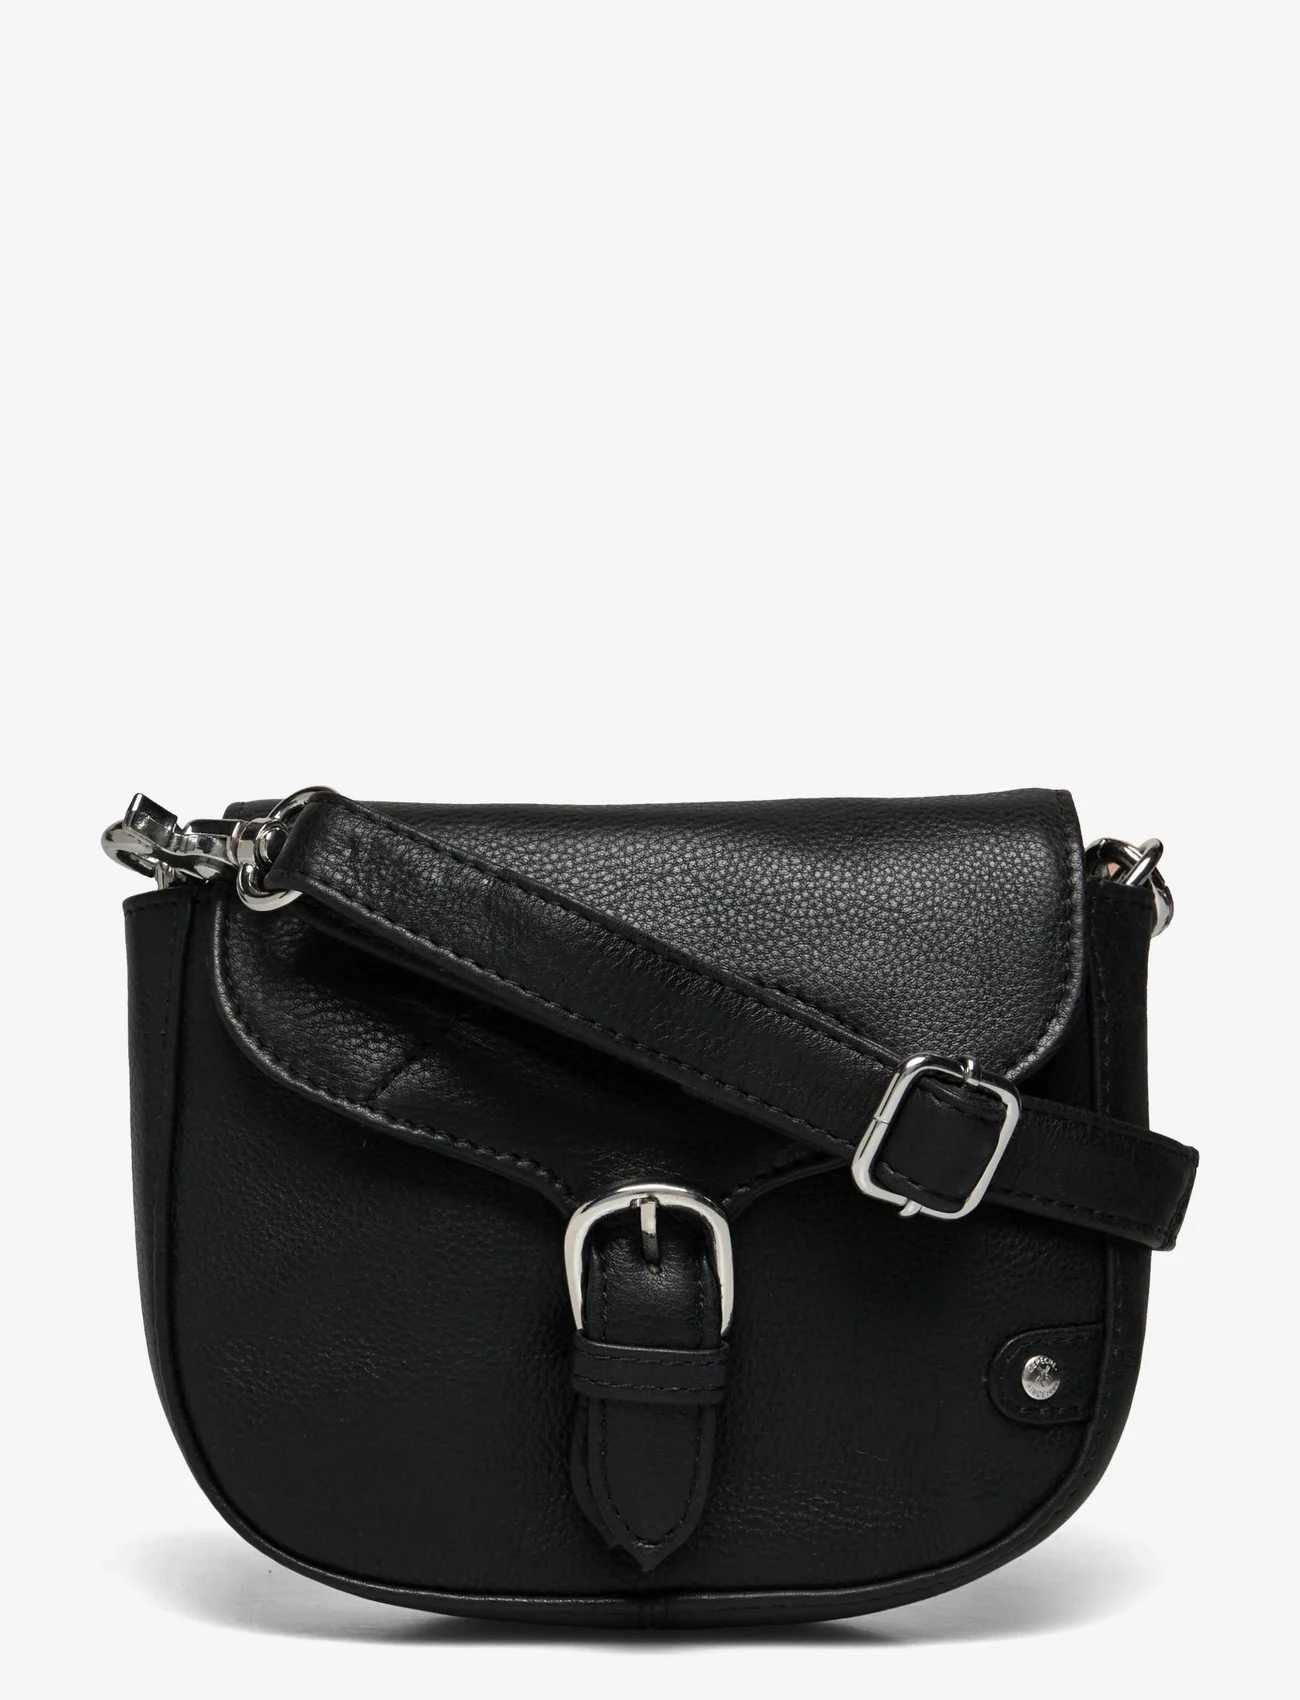 DEPECHE - Small bag / Clutch - feestelijke kleding voor outlet-prijzen - 099 black (nero) - 0